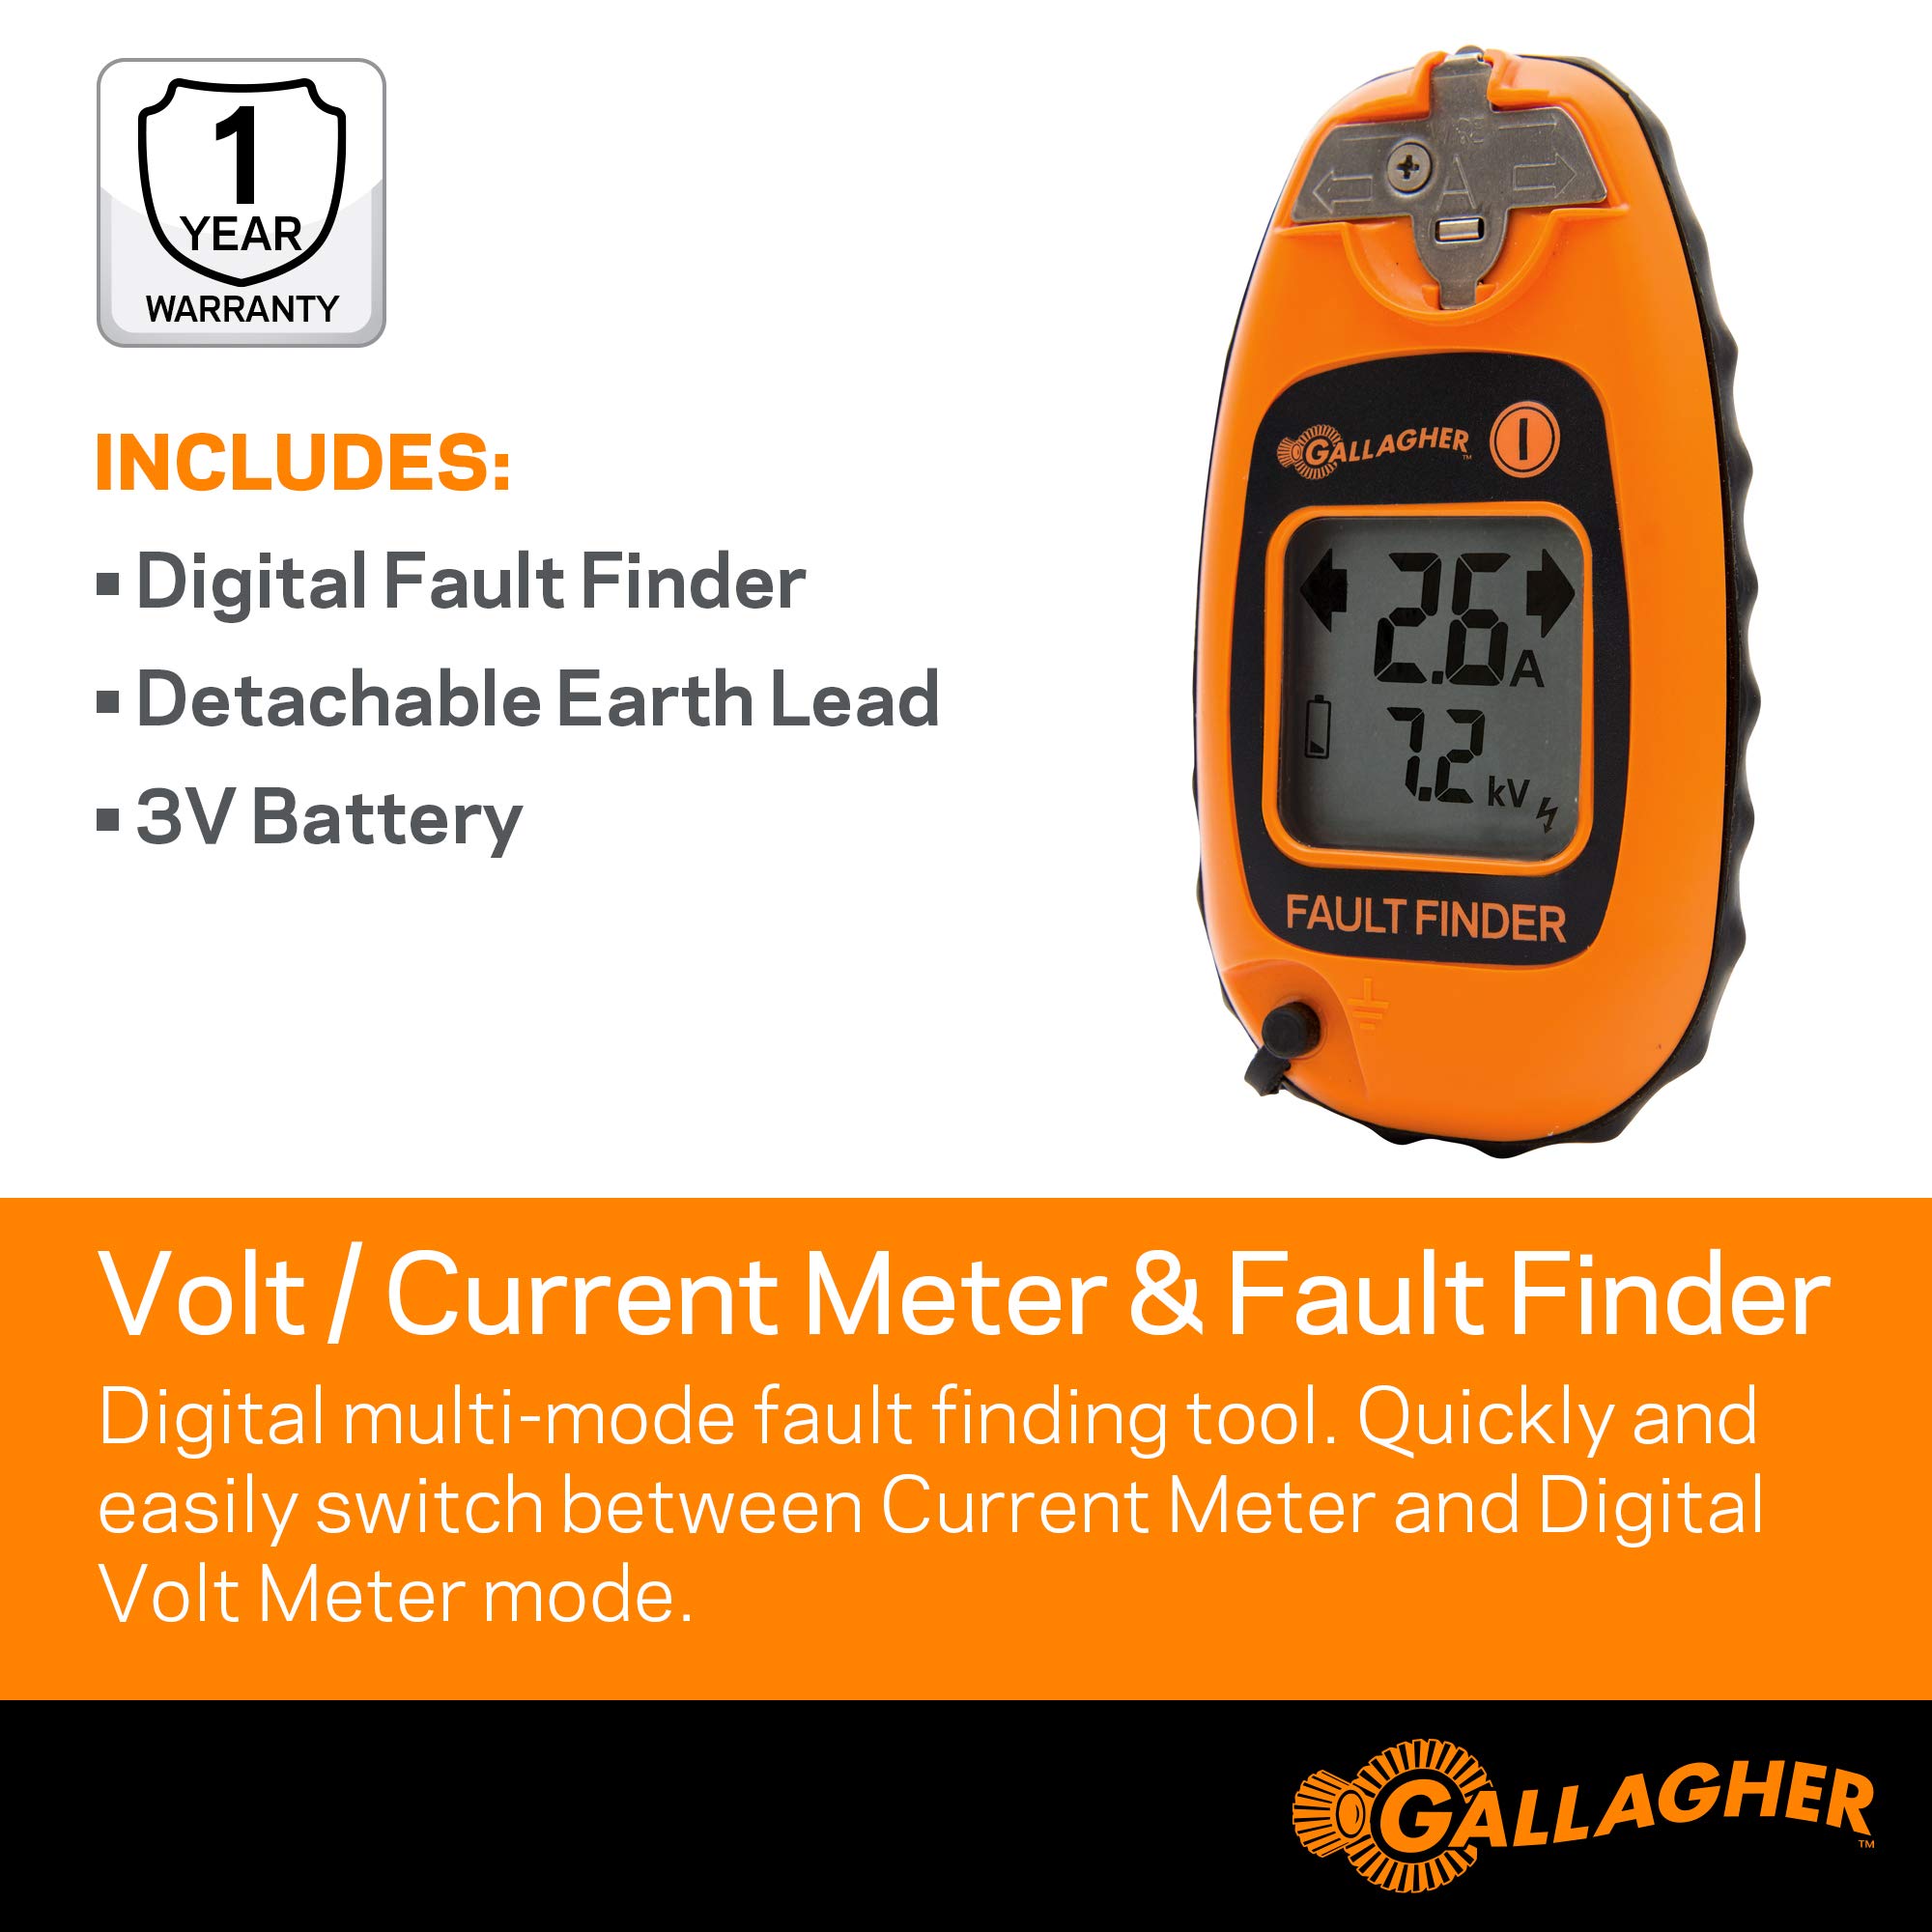 Gallagher 1.5 volt Battery Fence Volt/Current Meter and Fault Finder Orange - image 3 of 6